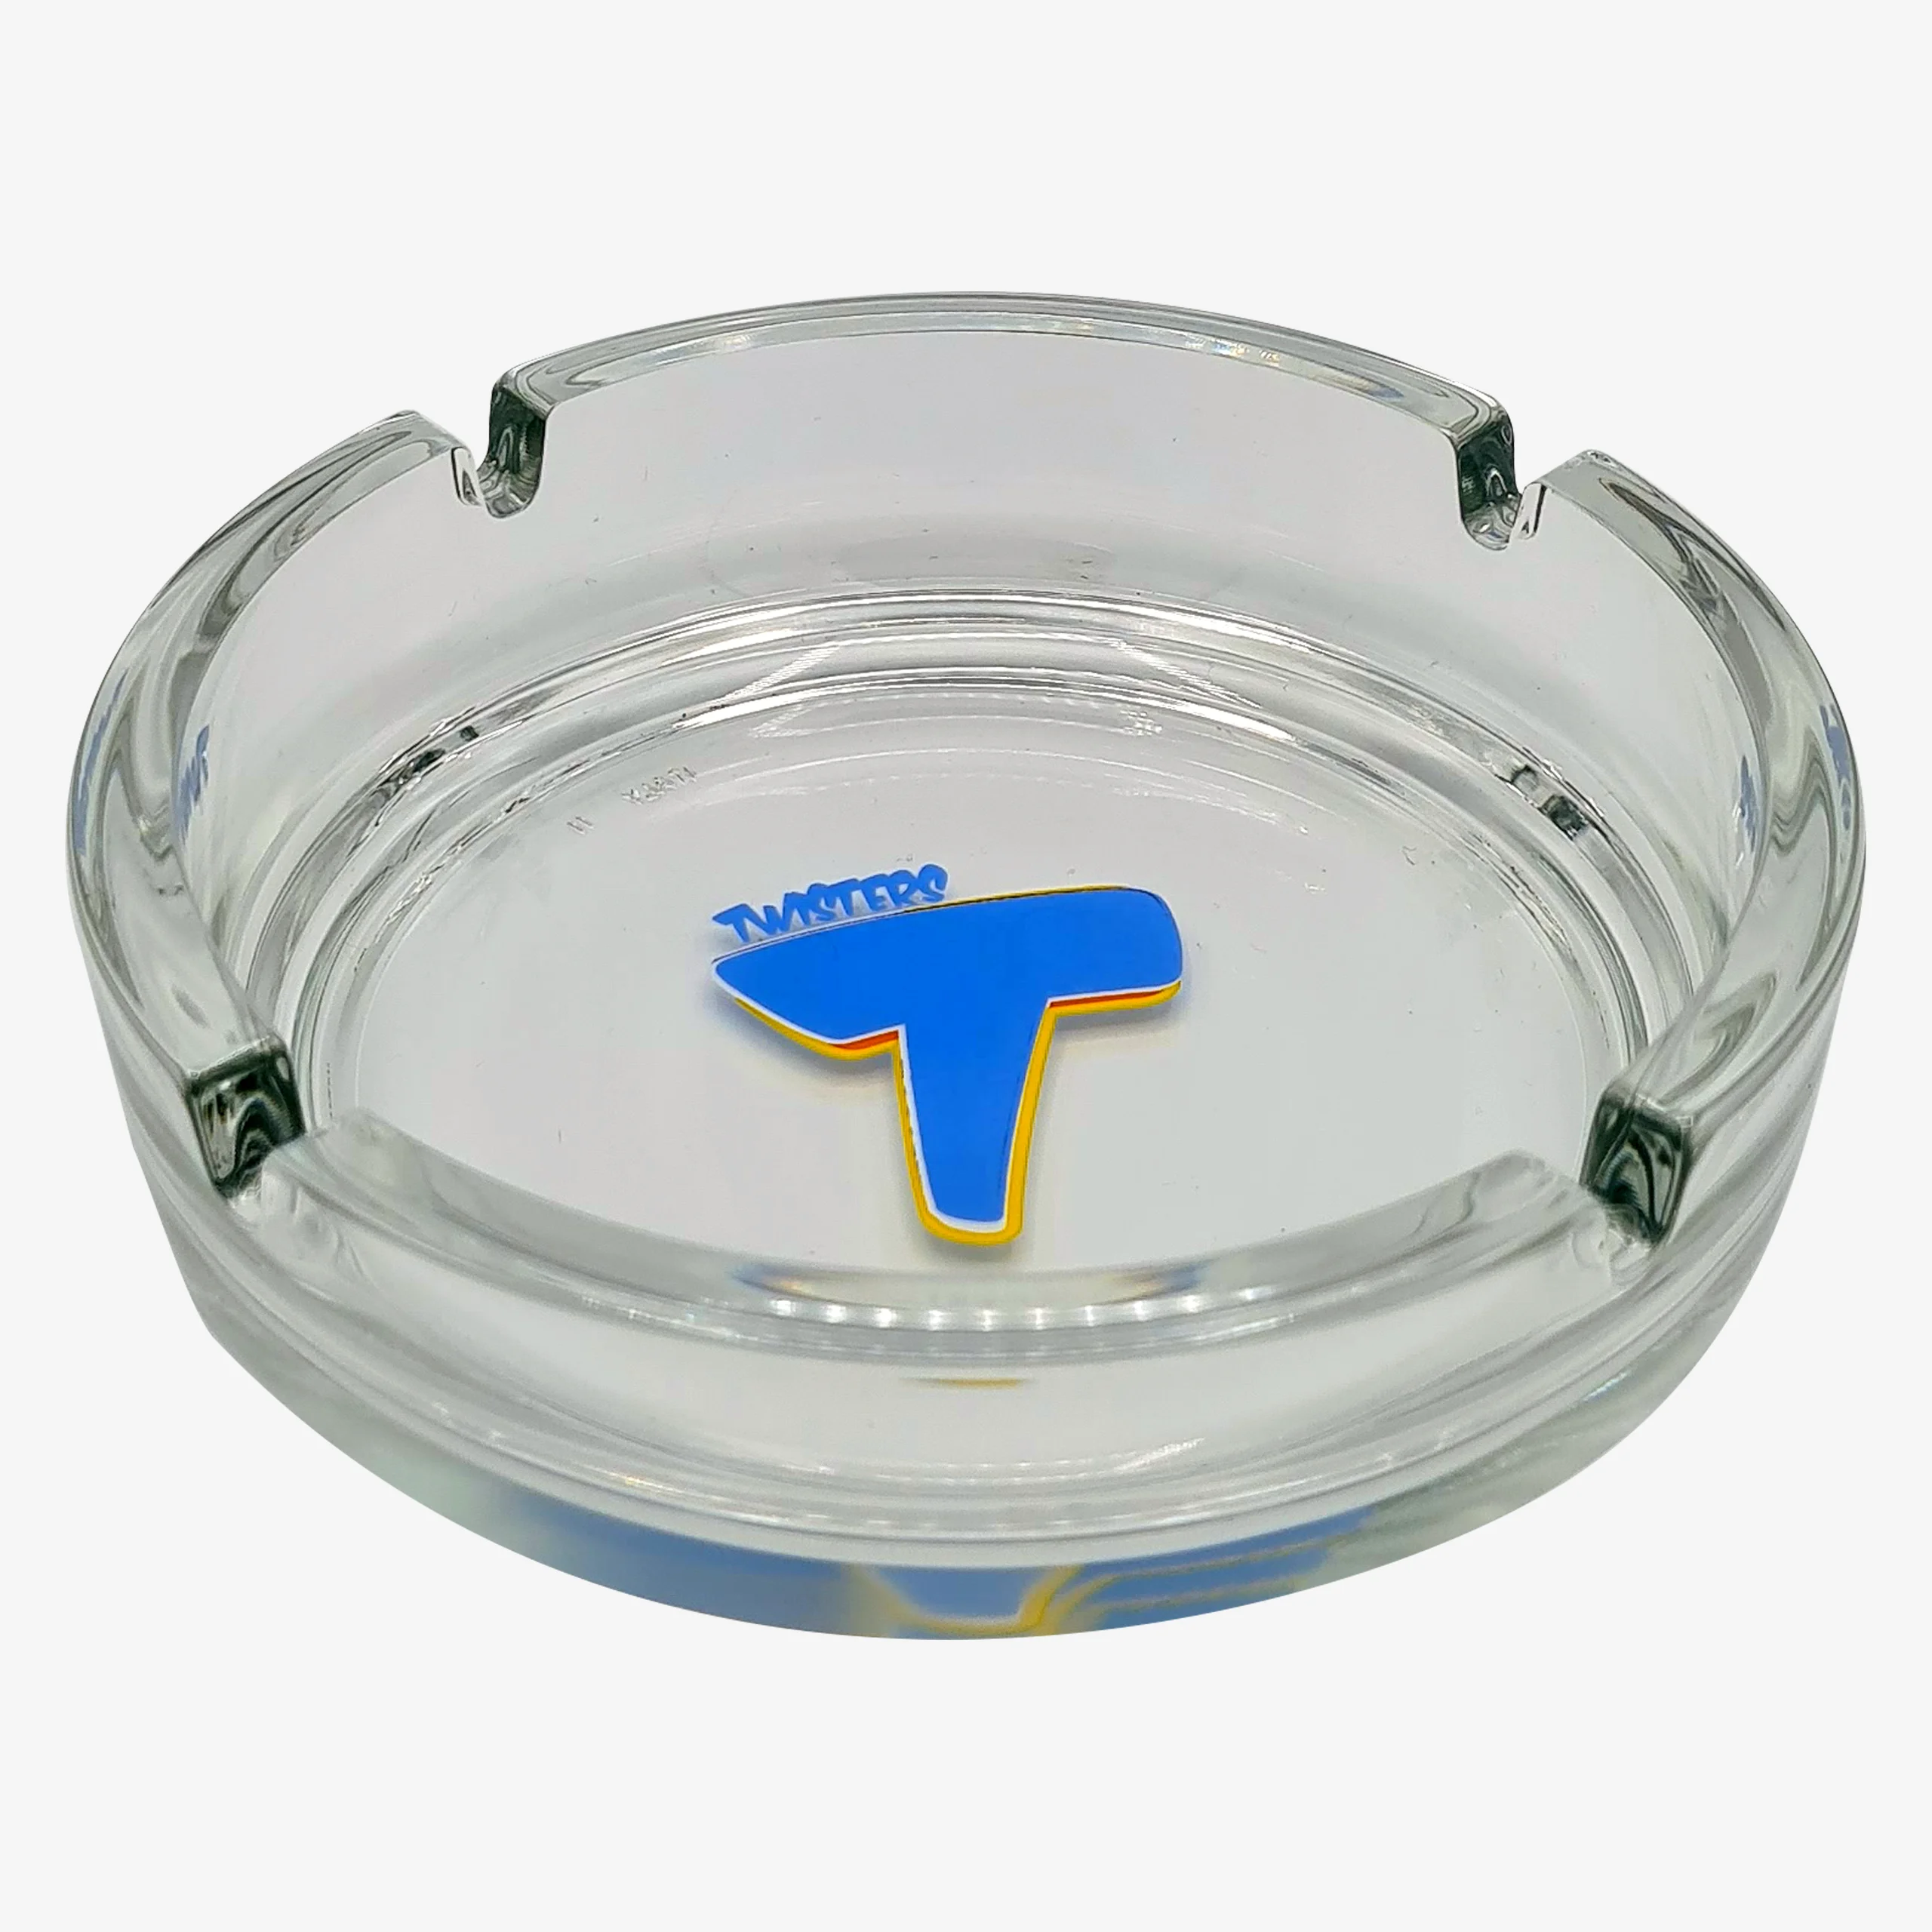 Extra großer Glas-Aschenbecher von rastal mit TWISTERS Logo